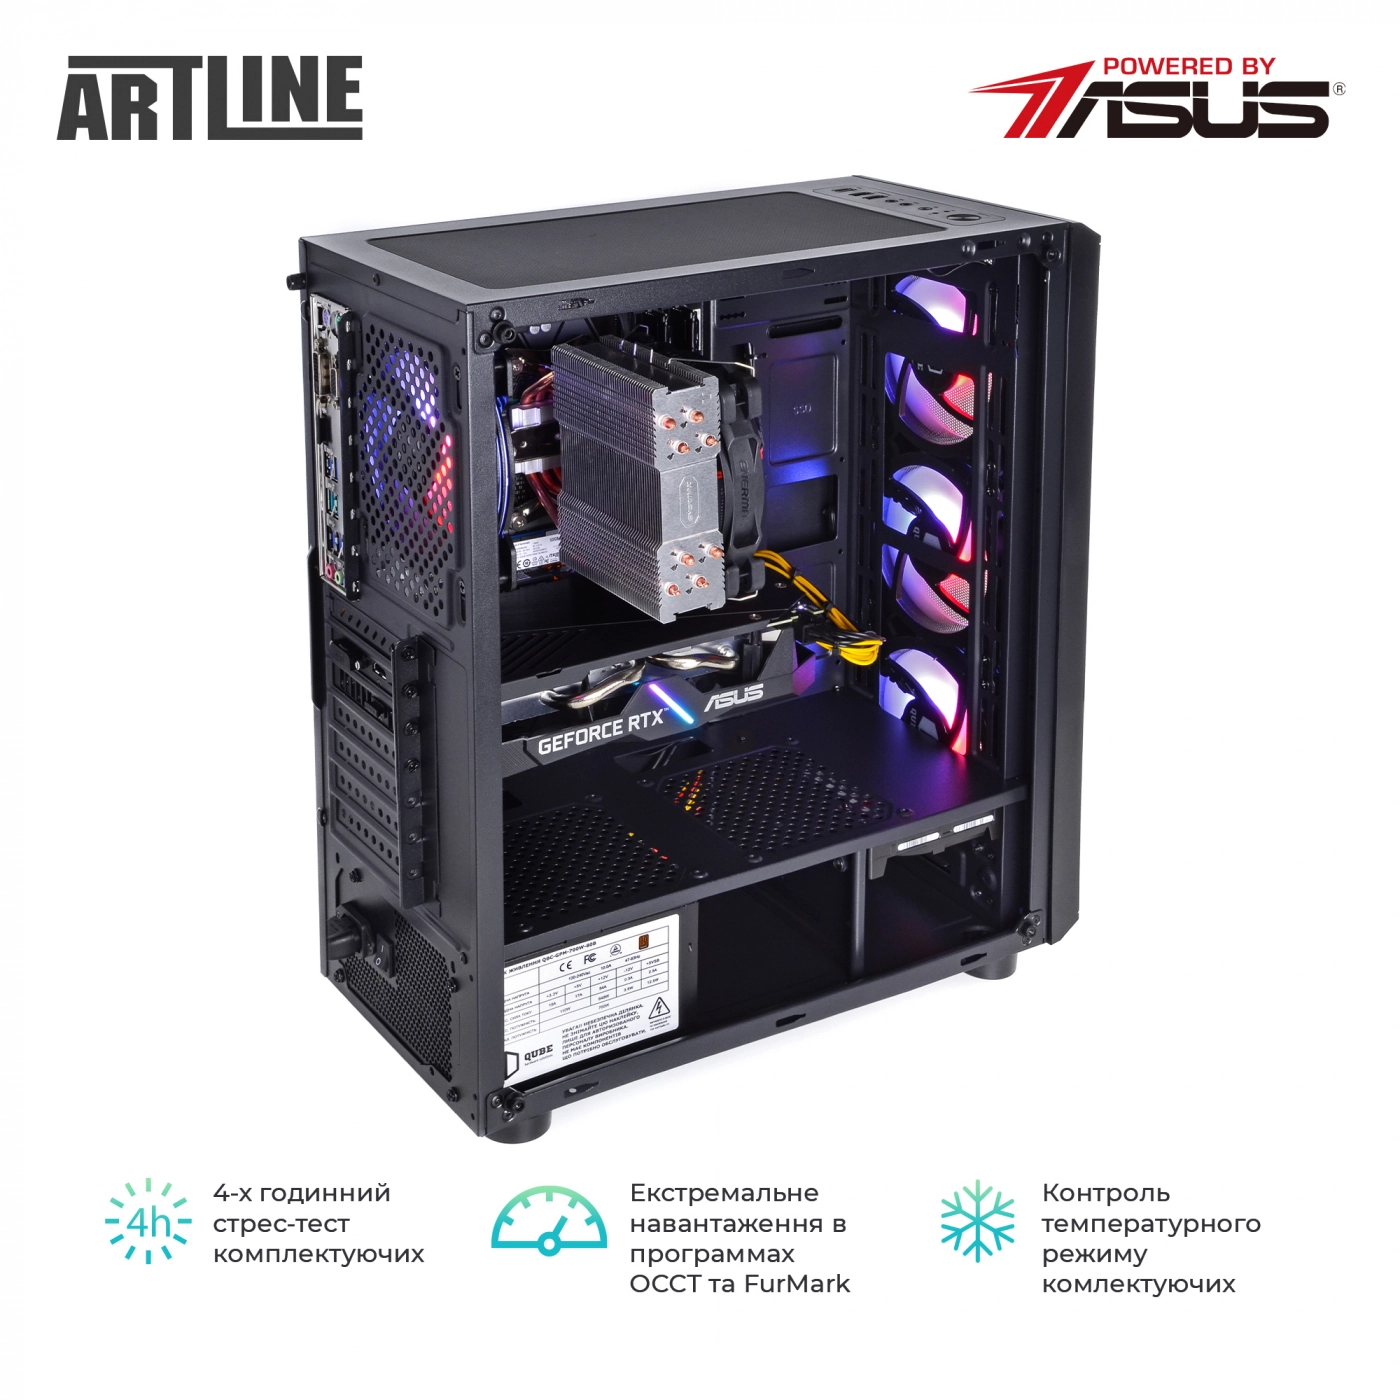 Купить Компьютер ARTLINE Gaming X73v29 - фото 9